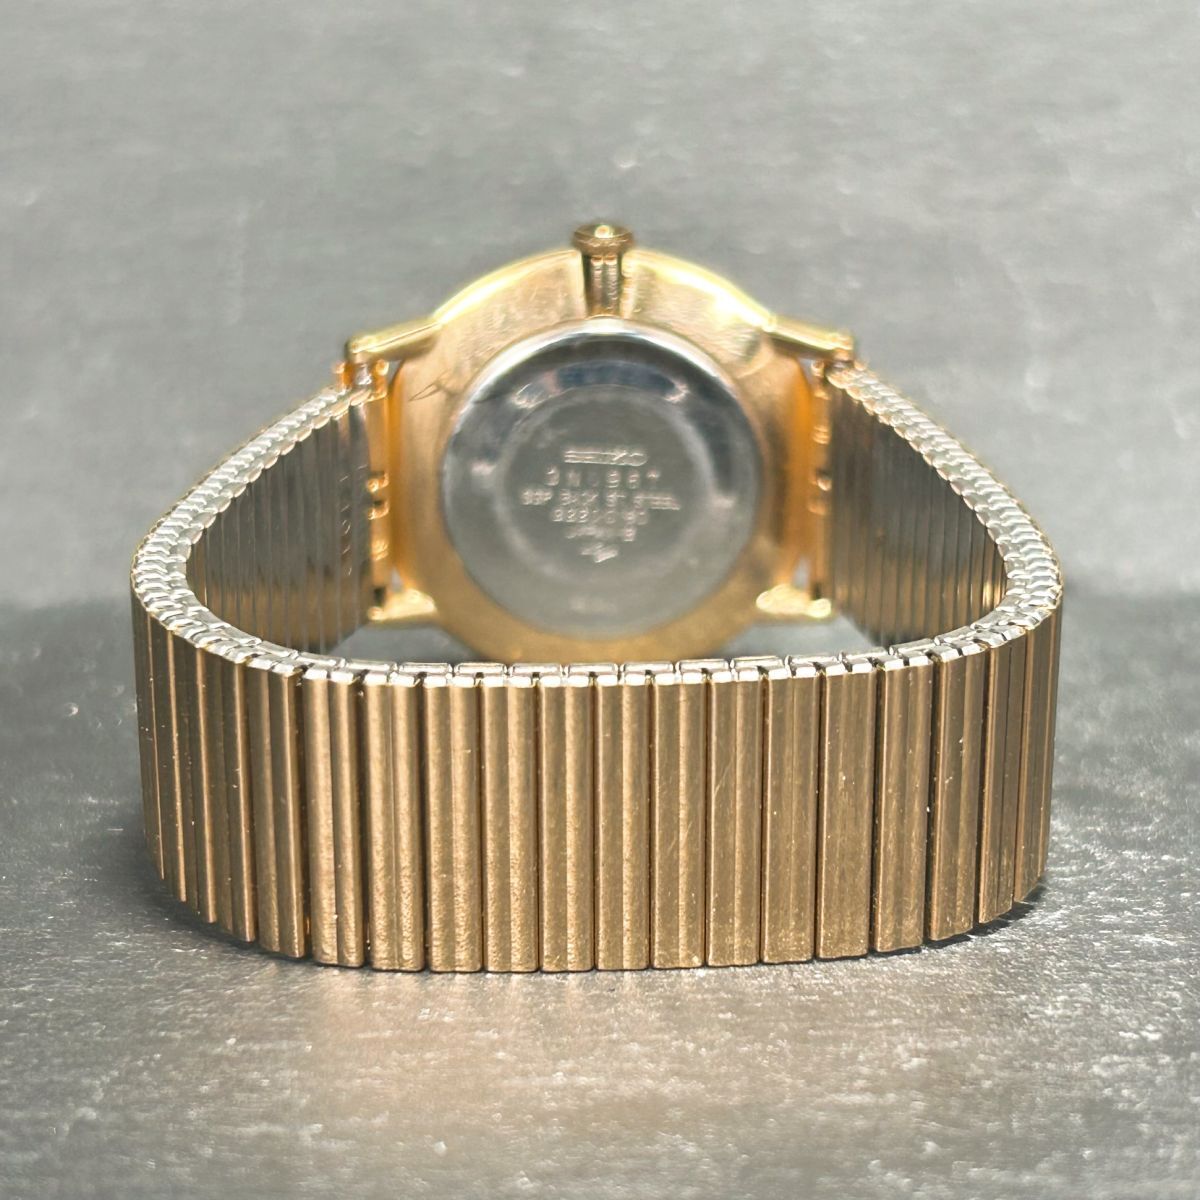 1970年代製 SEIKO セイコー 2220-0180 腕時計 機械式 手巻き アナログ 亀戸製 ゴールド文字盤 ステンレススチール メンズ 動作確認済み